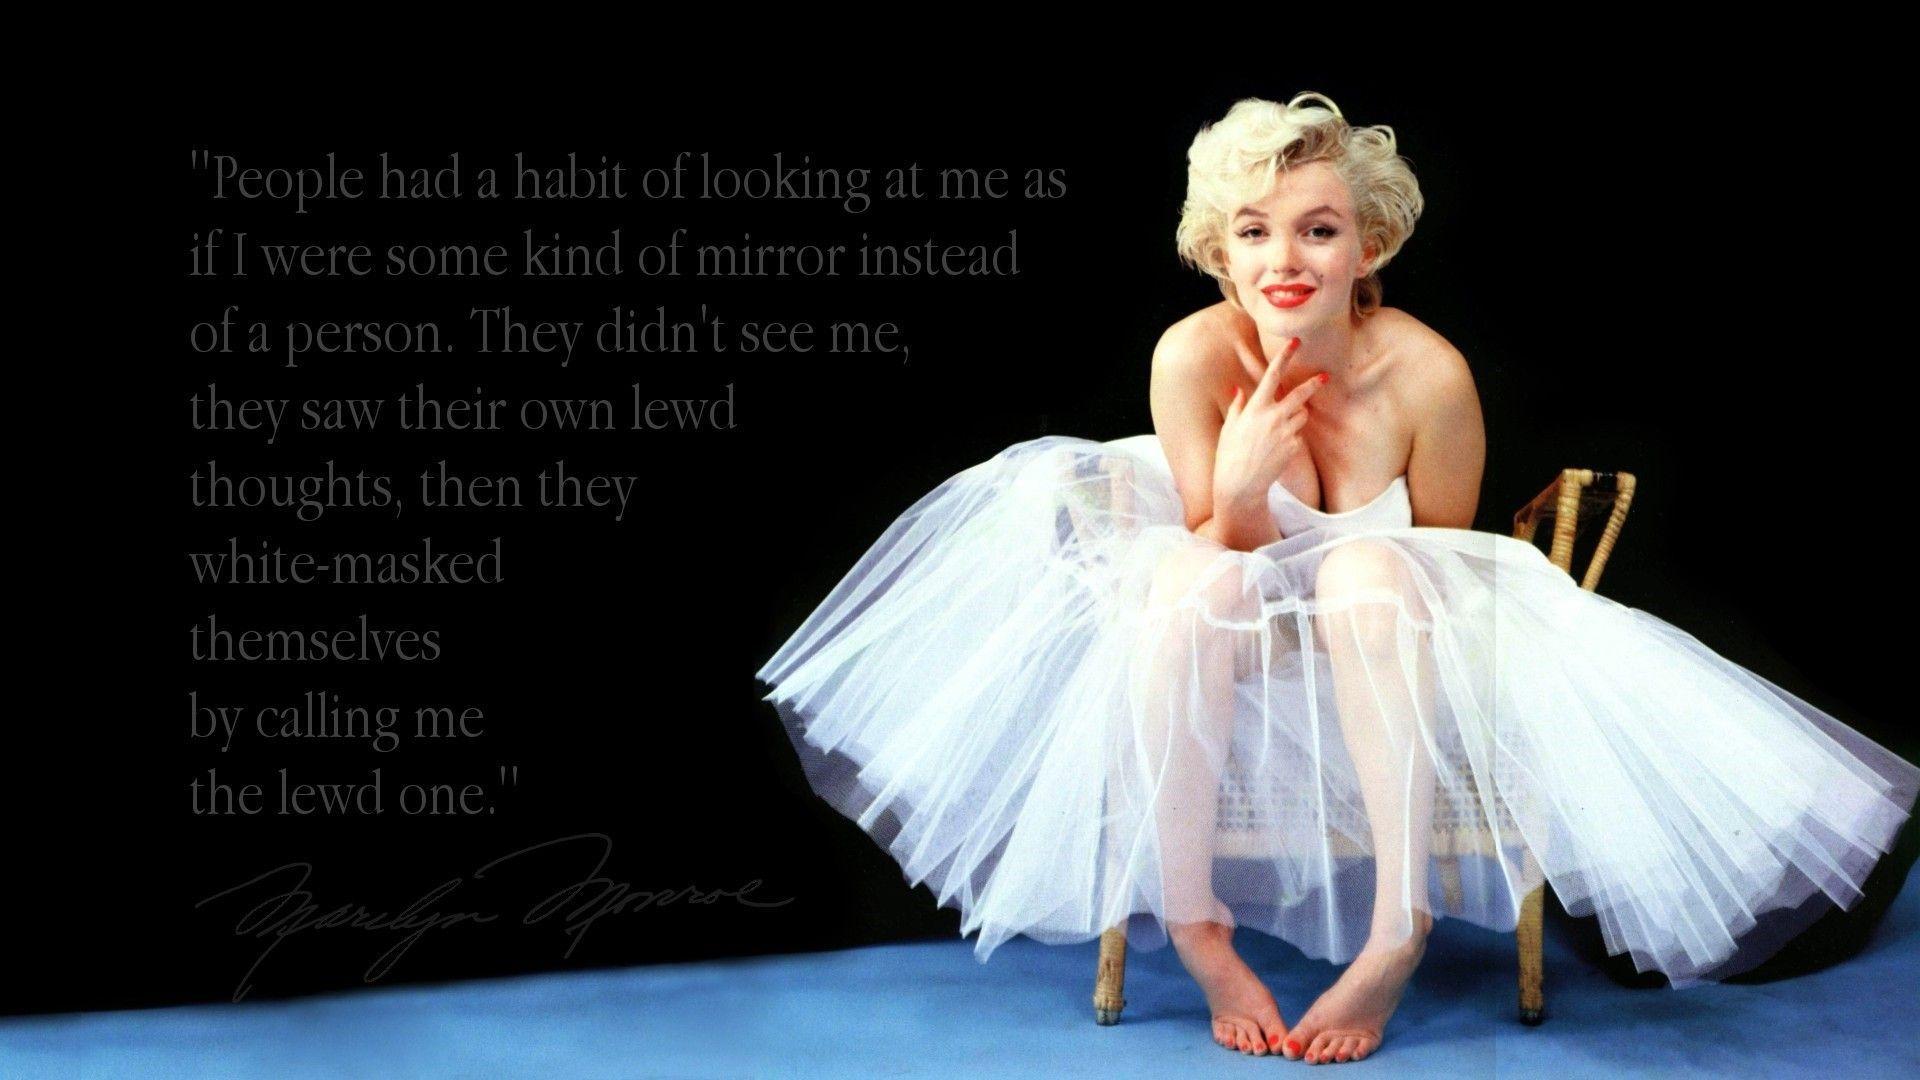 1920x1080 Hình nền Marilyn Monroe.  Marilyn Monroe